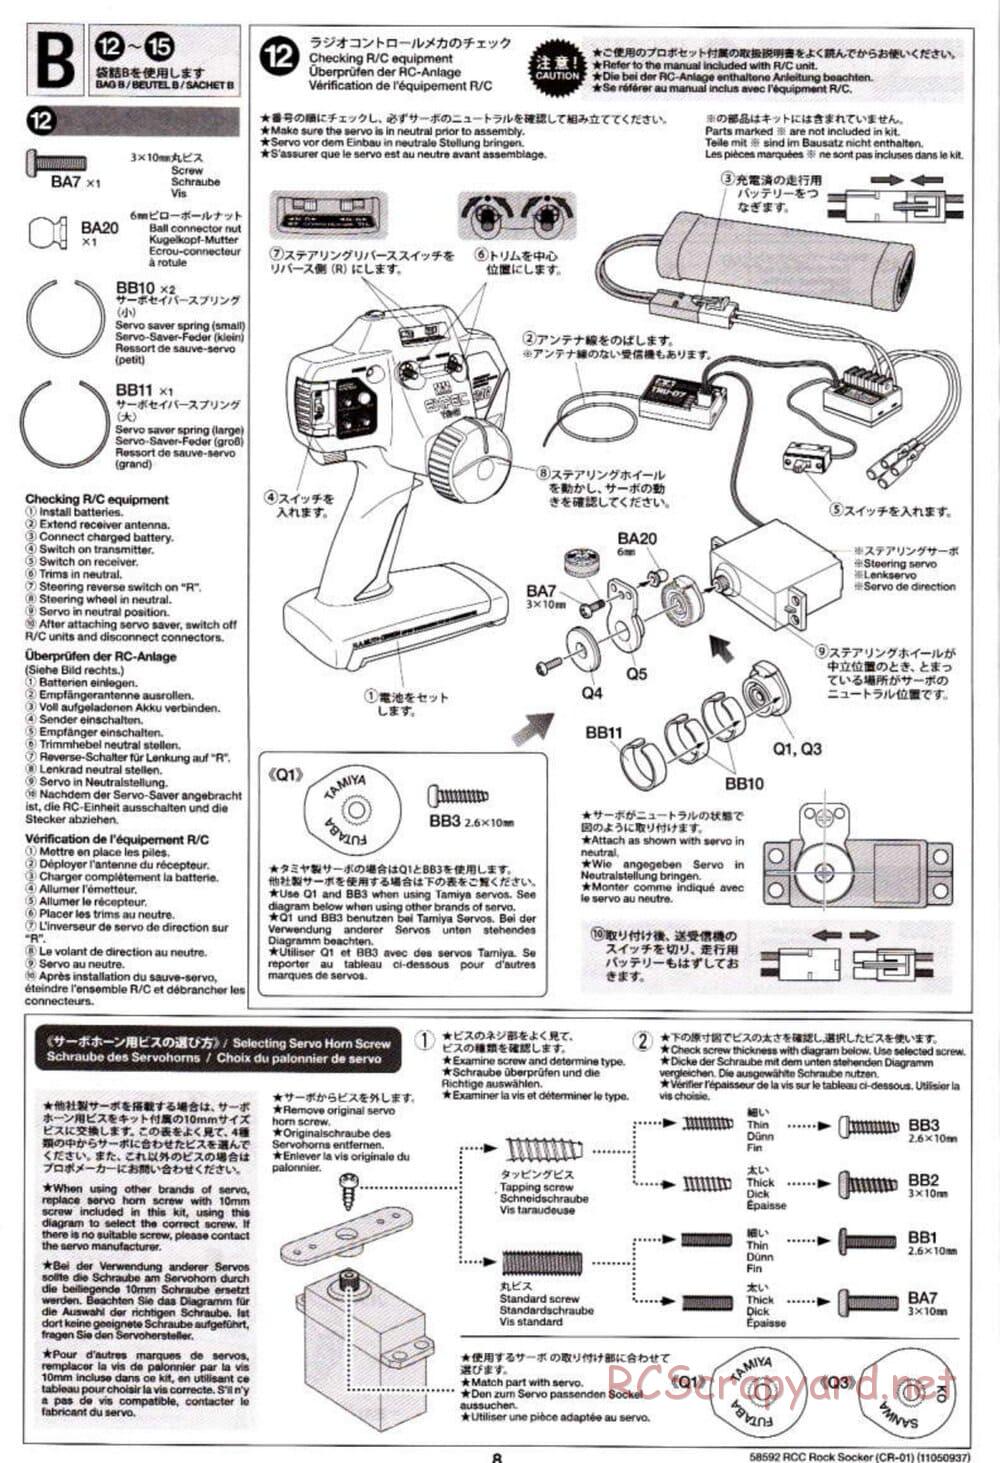 Tamiya - Rock Socker - CR-01 Chassis - Manual - Page 8